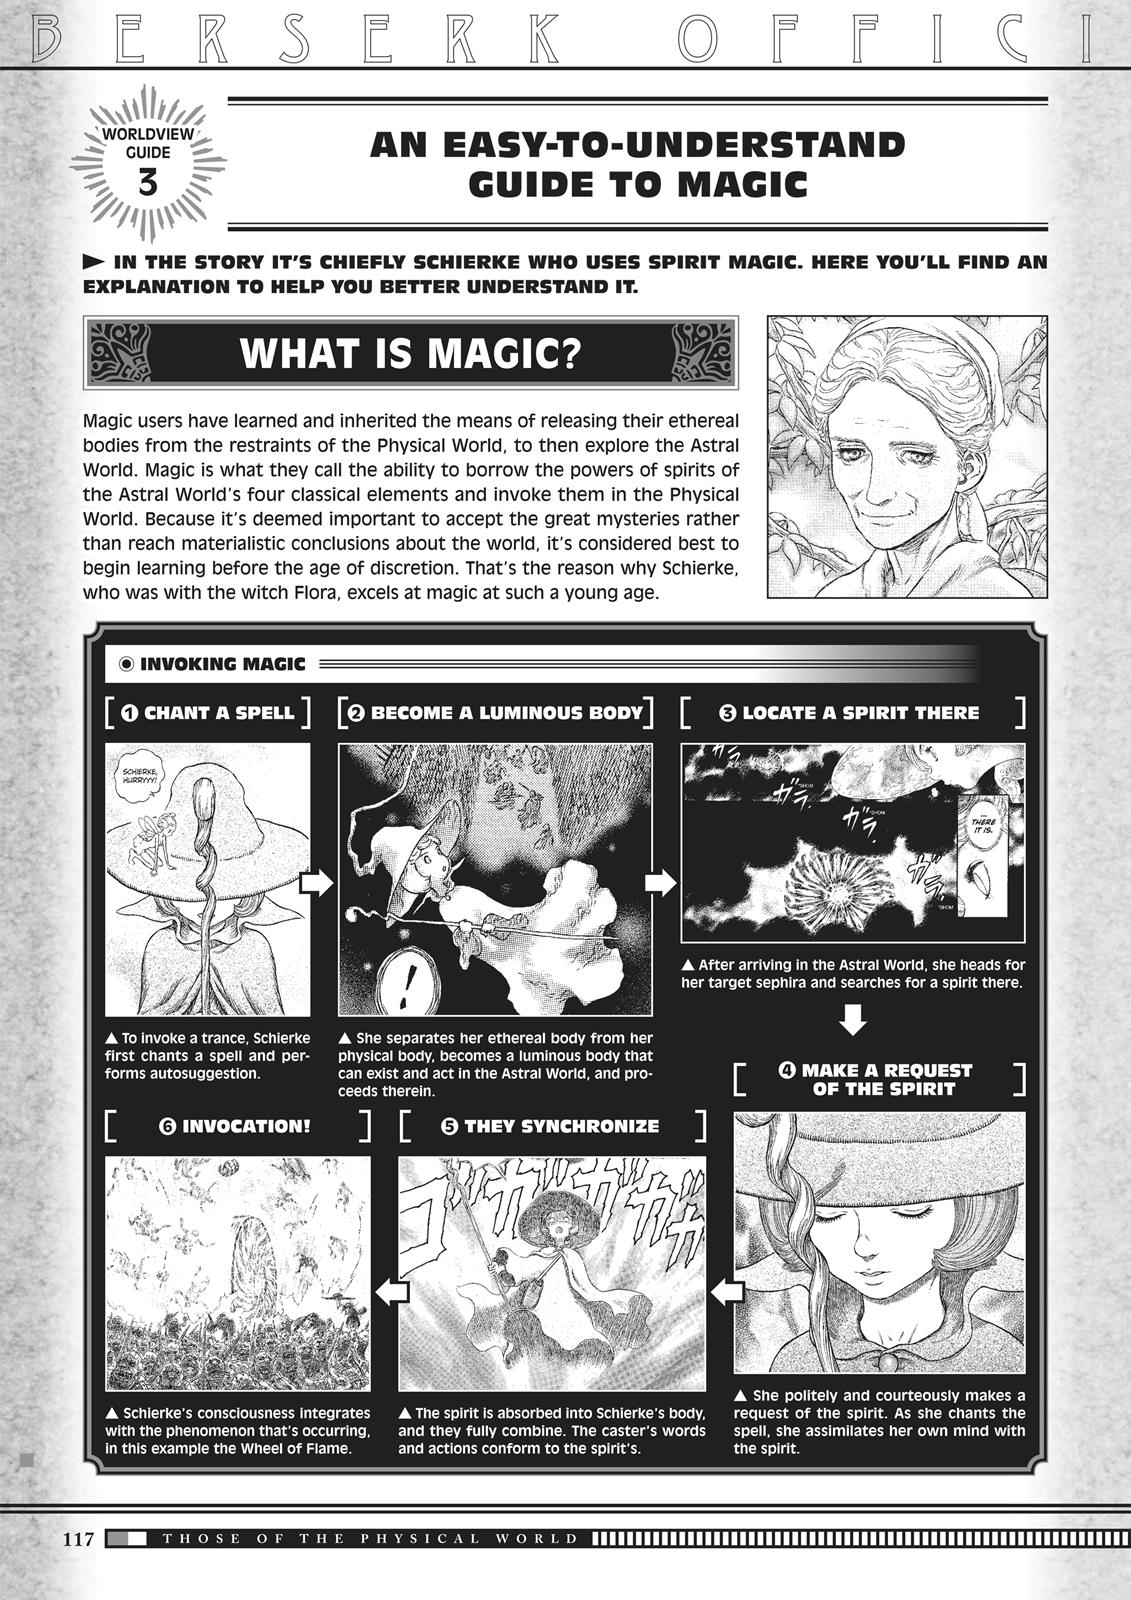 Berserk Manga Chapter 350.5 image 115